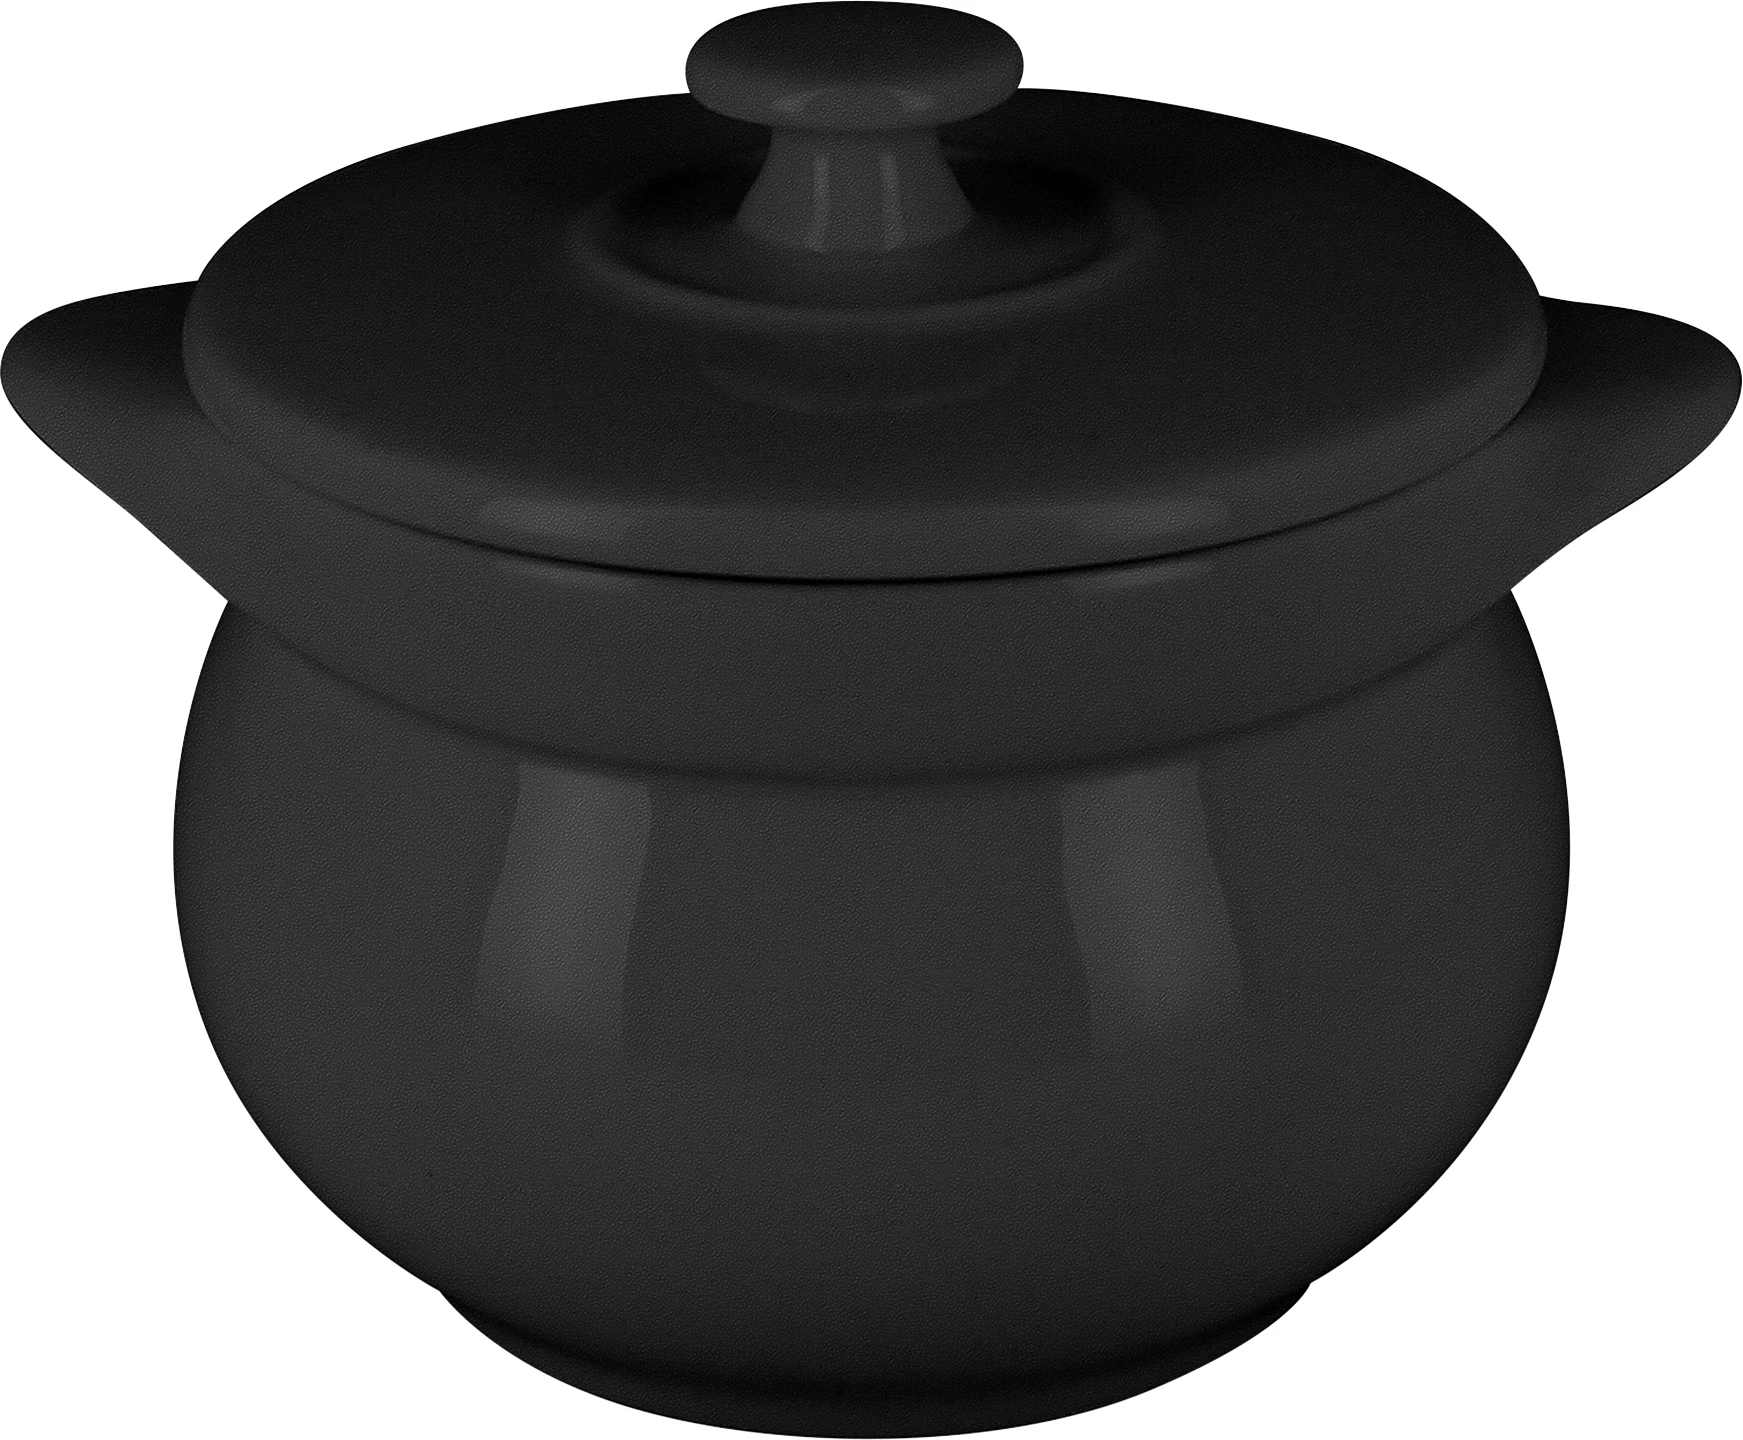 RAK Chef's Fusion terrin med låg, sort, 45 cl, ø10,6 cm